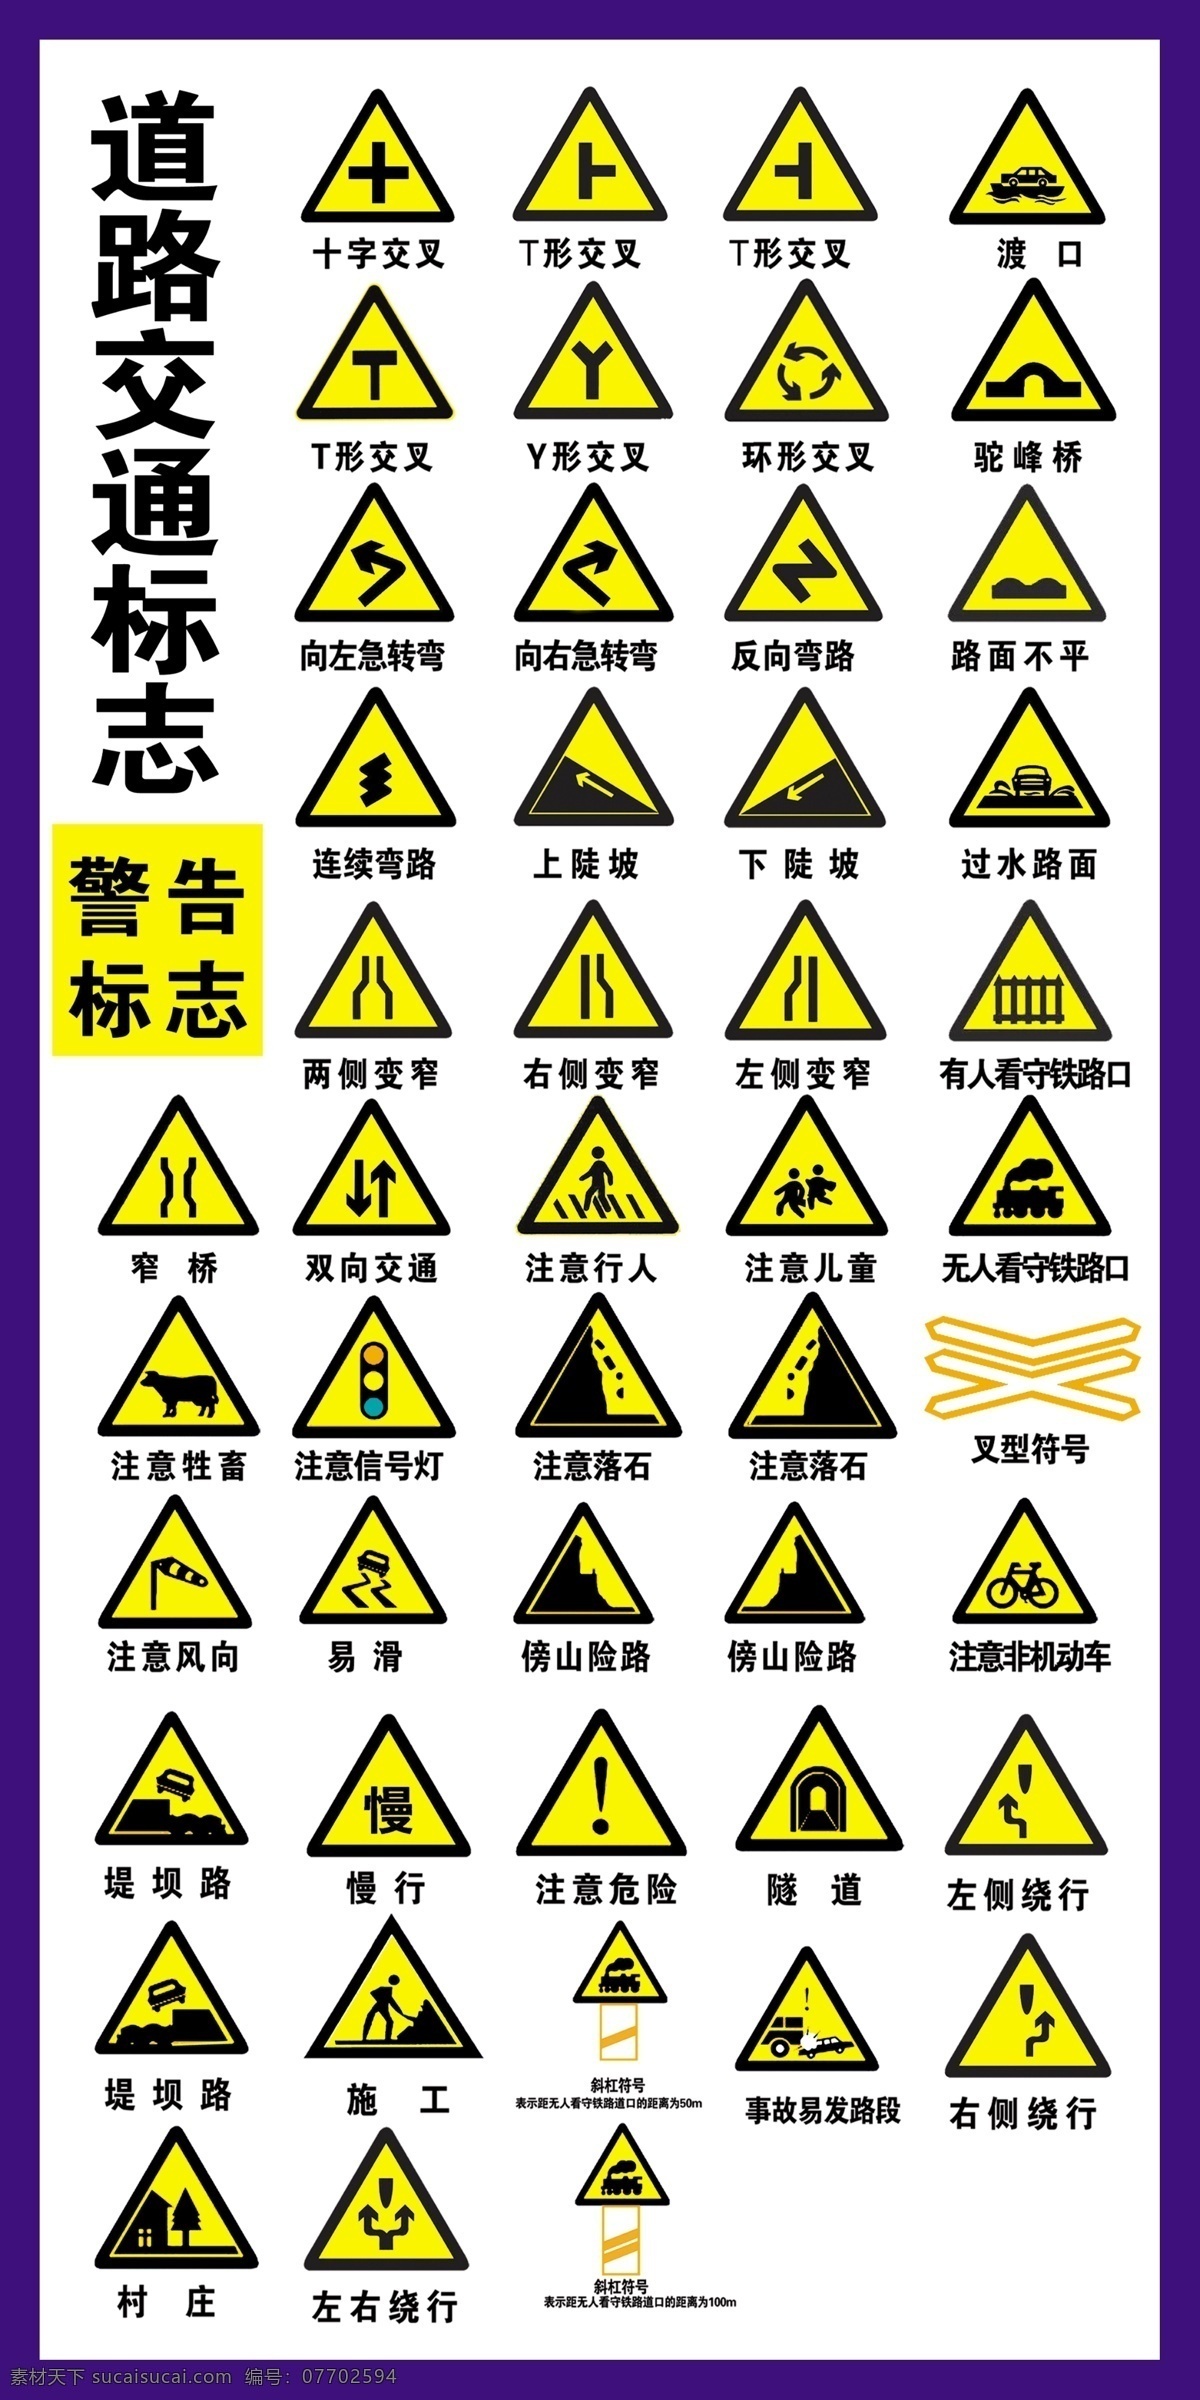 道路交通标志 警告标志 下陡坡 注意编号灯 施工 慢行 写真 分层